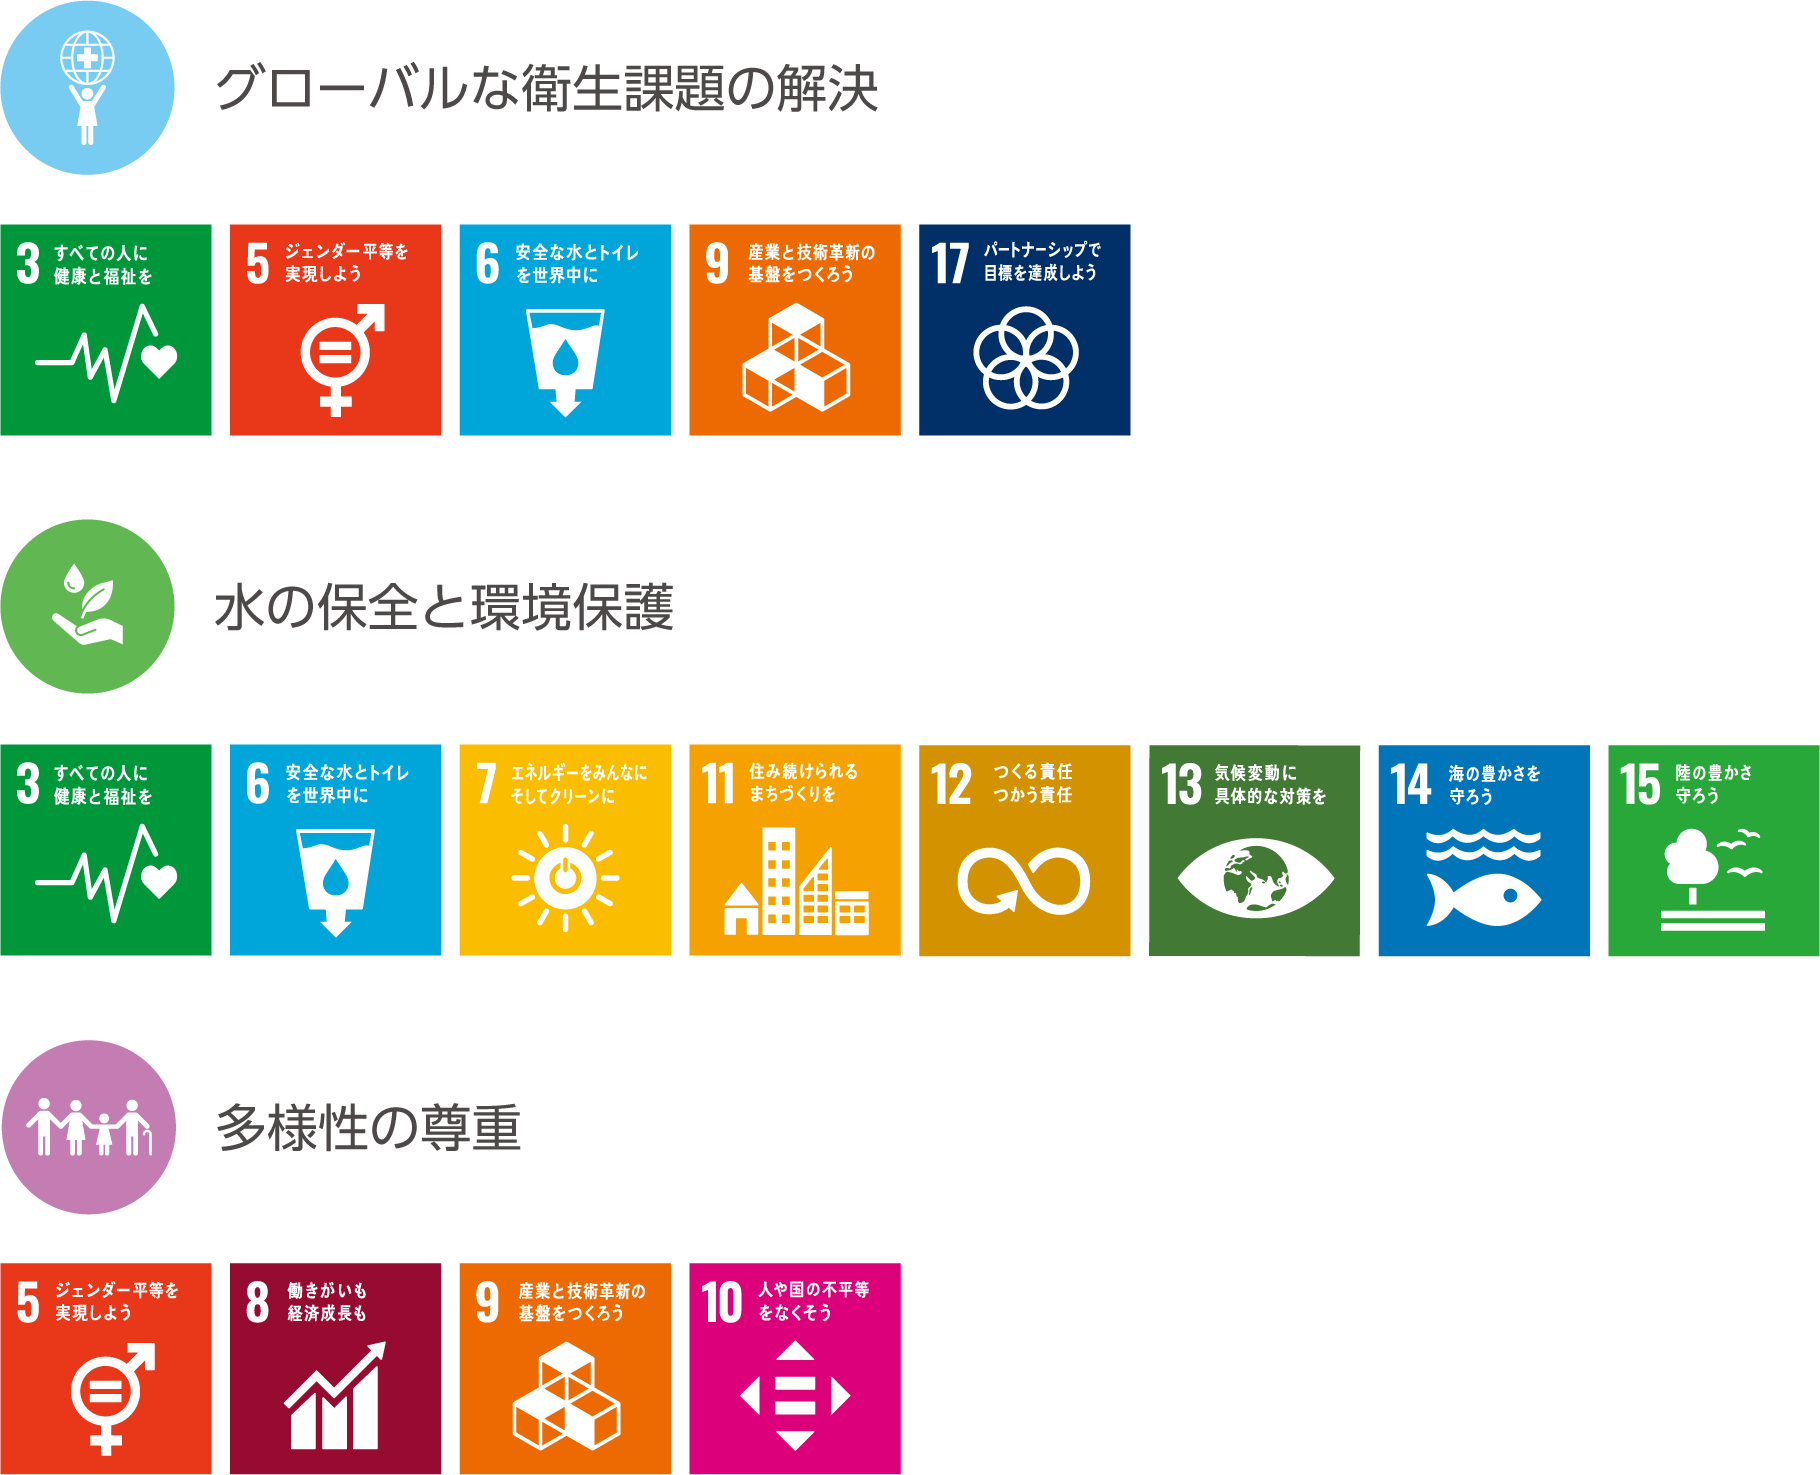 3つの優先取り組み分野と関連するSDGsのアイコン：グローバルな衛生課題の解決および関連するゴール（3、5、6、9、17）、水の保全と環境保護および関連するゴール（3、6、7、11、12、13、14、15）、多様性の尊重および関連するゴール（5、8、9、10）